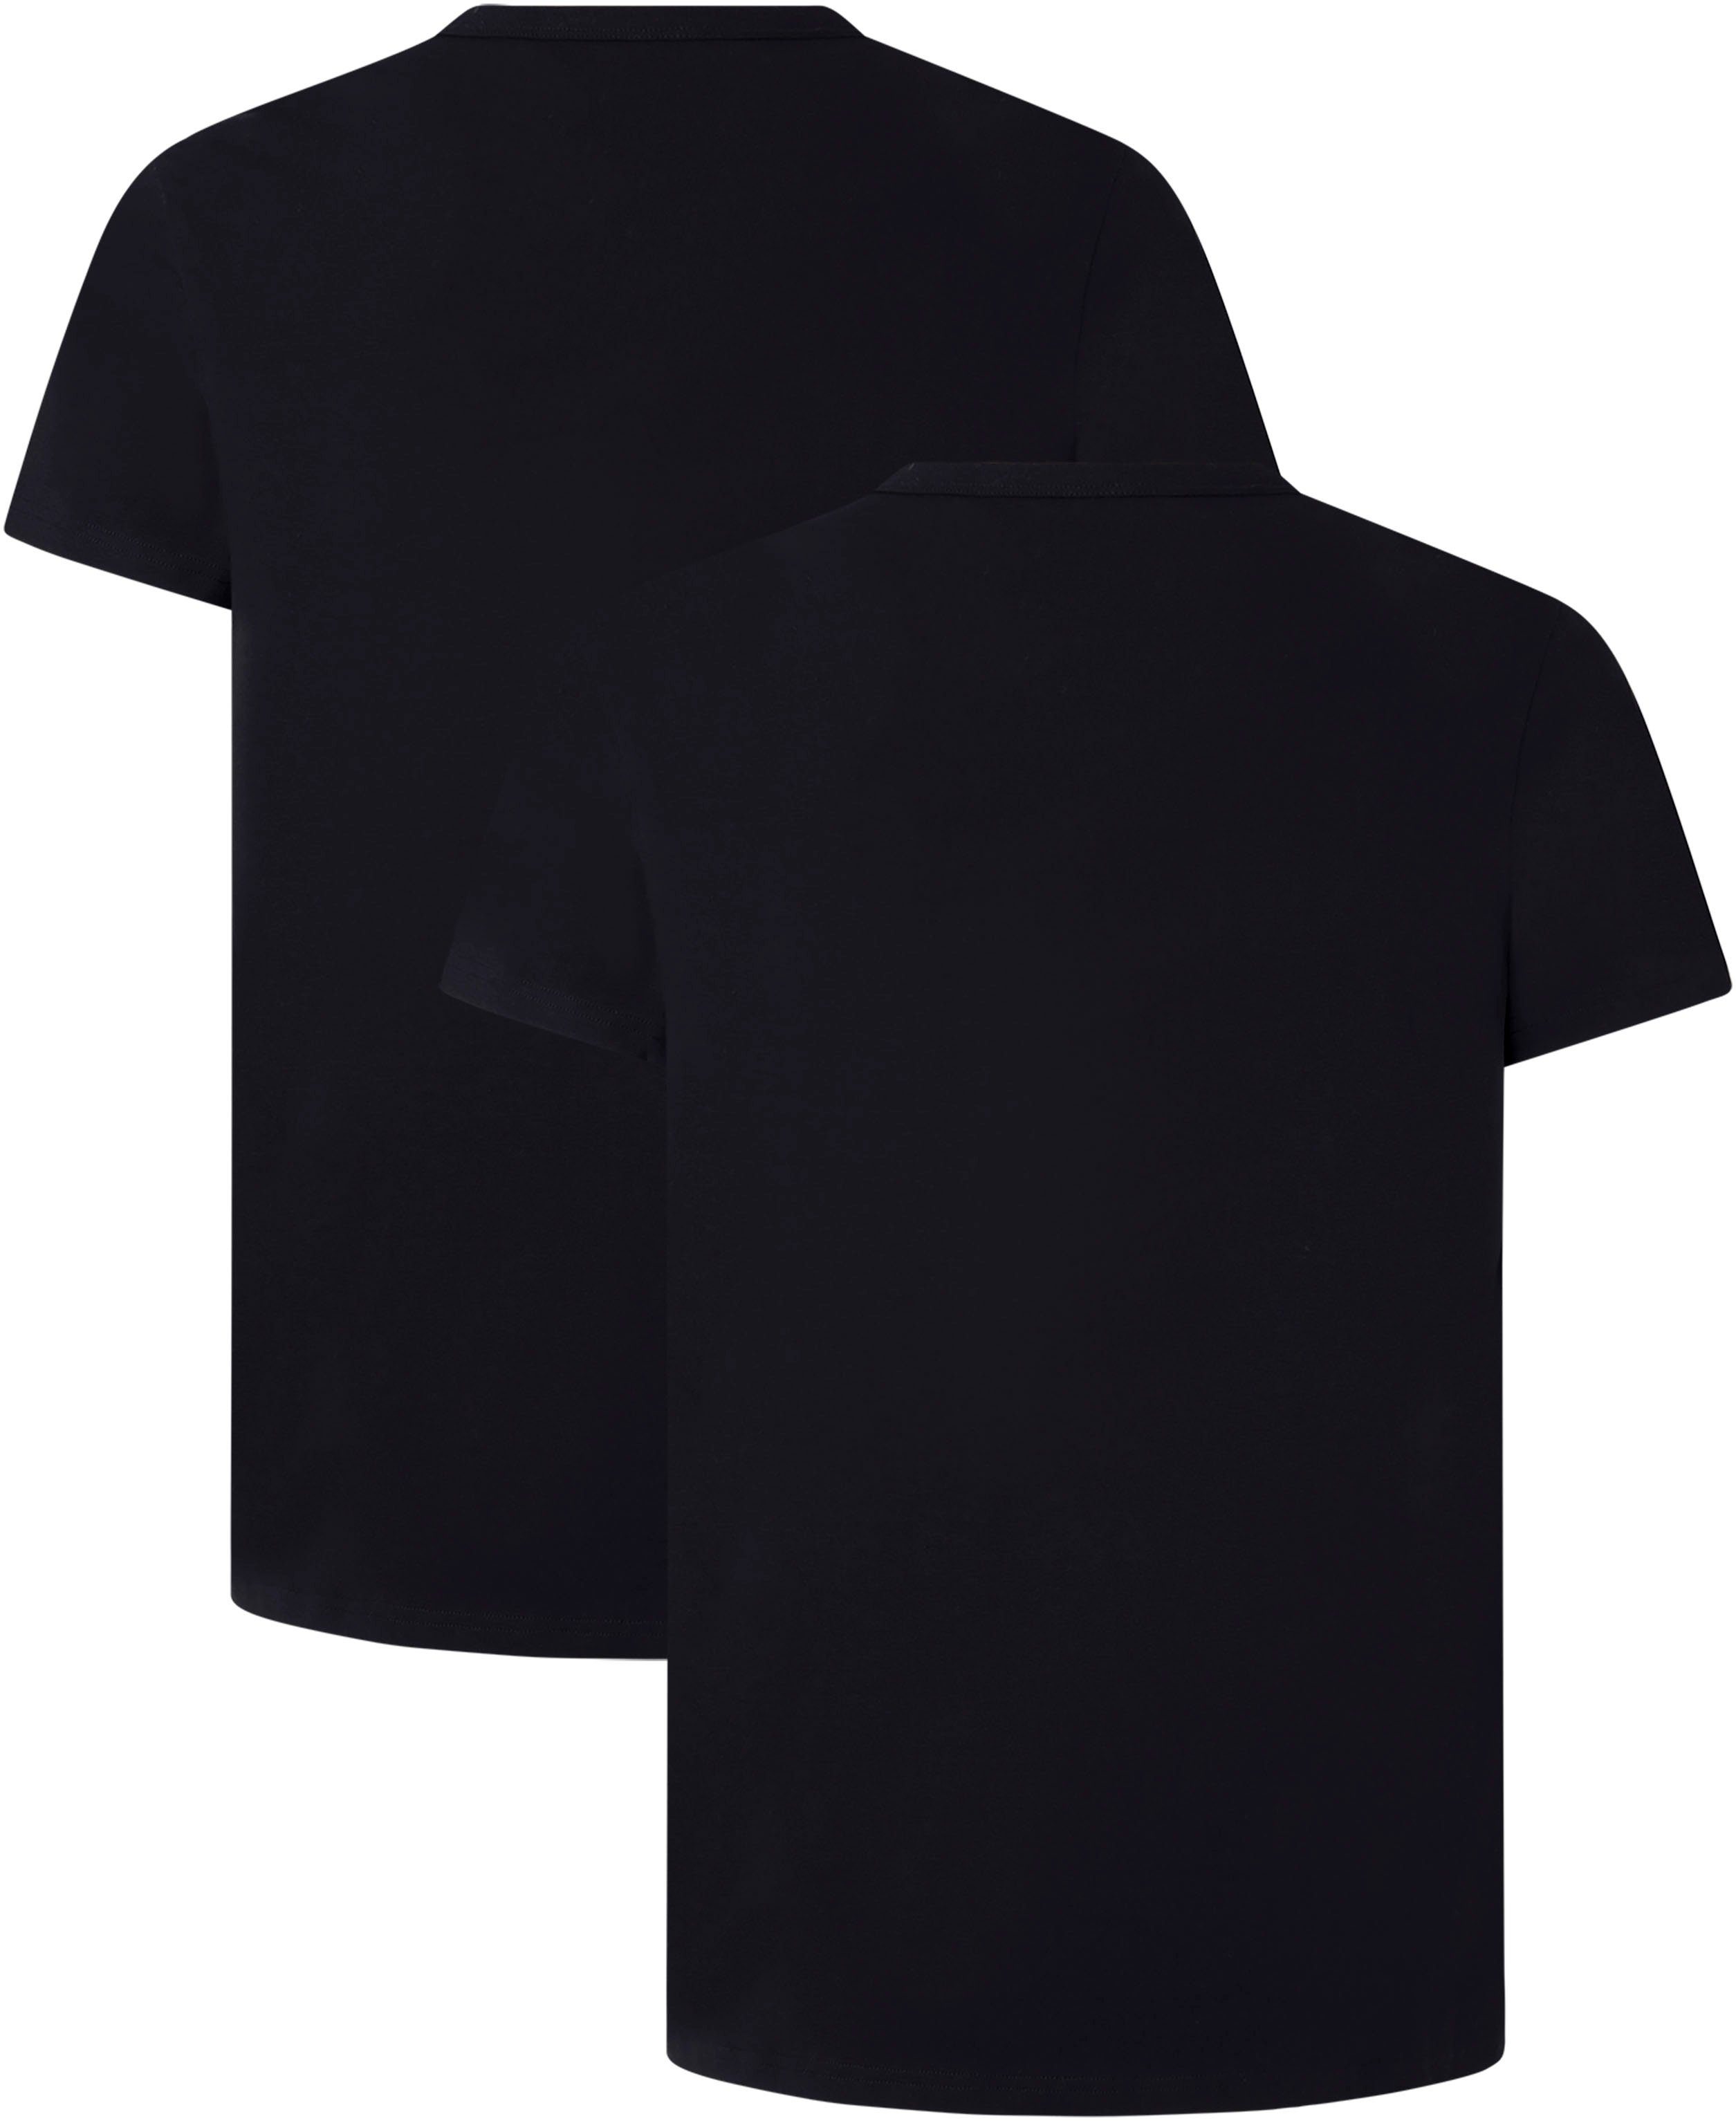 + Rundhalsshirt schwarz mit Pepe schwarz Jeans Stretch (Packung)